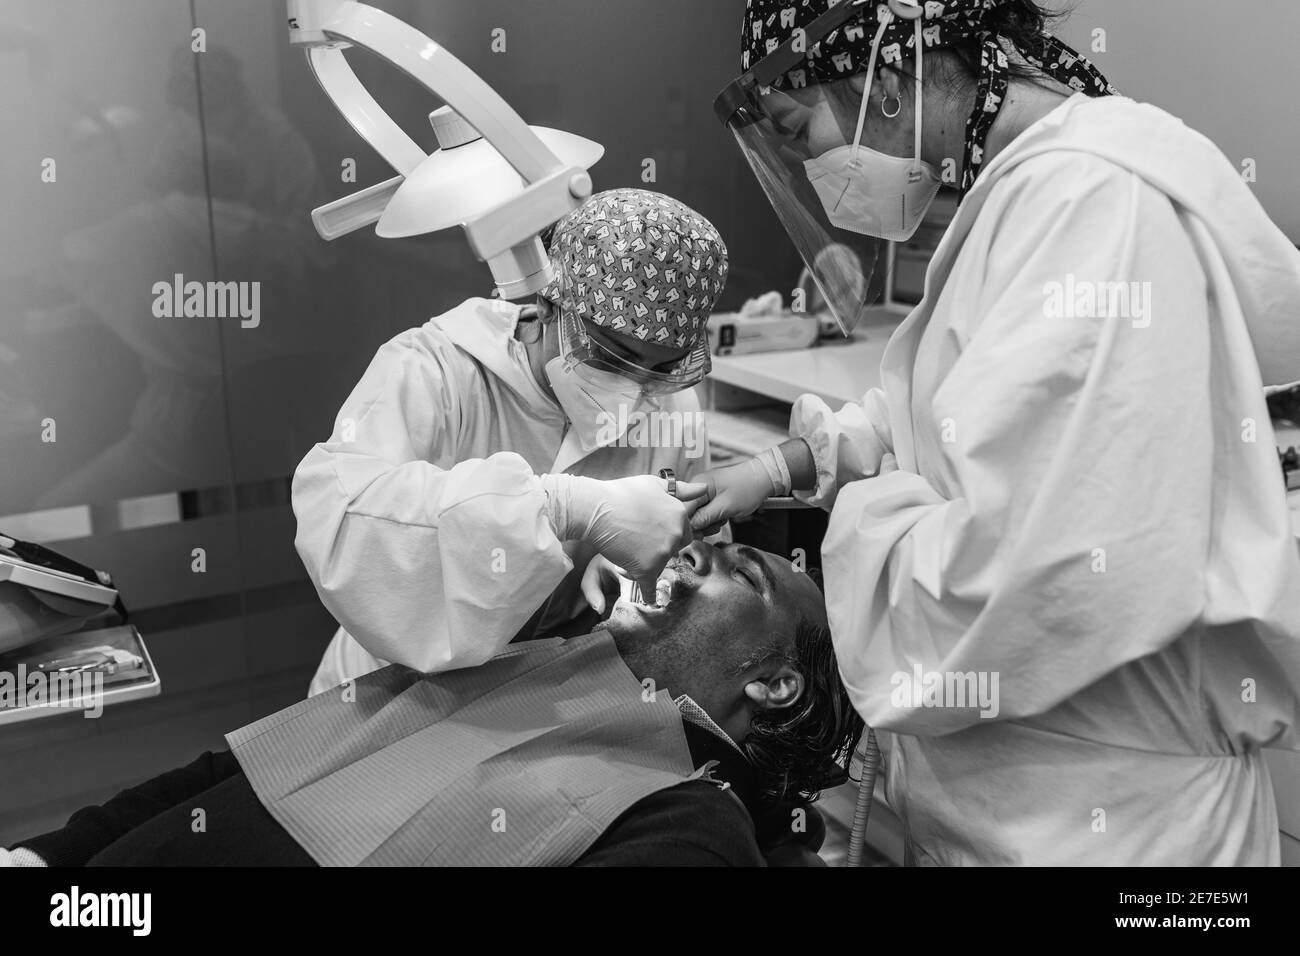 Chirurgo dentale che inietta anestesia in bocca. Tre persone. Concetto di salute dentale. Bianco e nero. Foto Stock